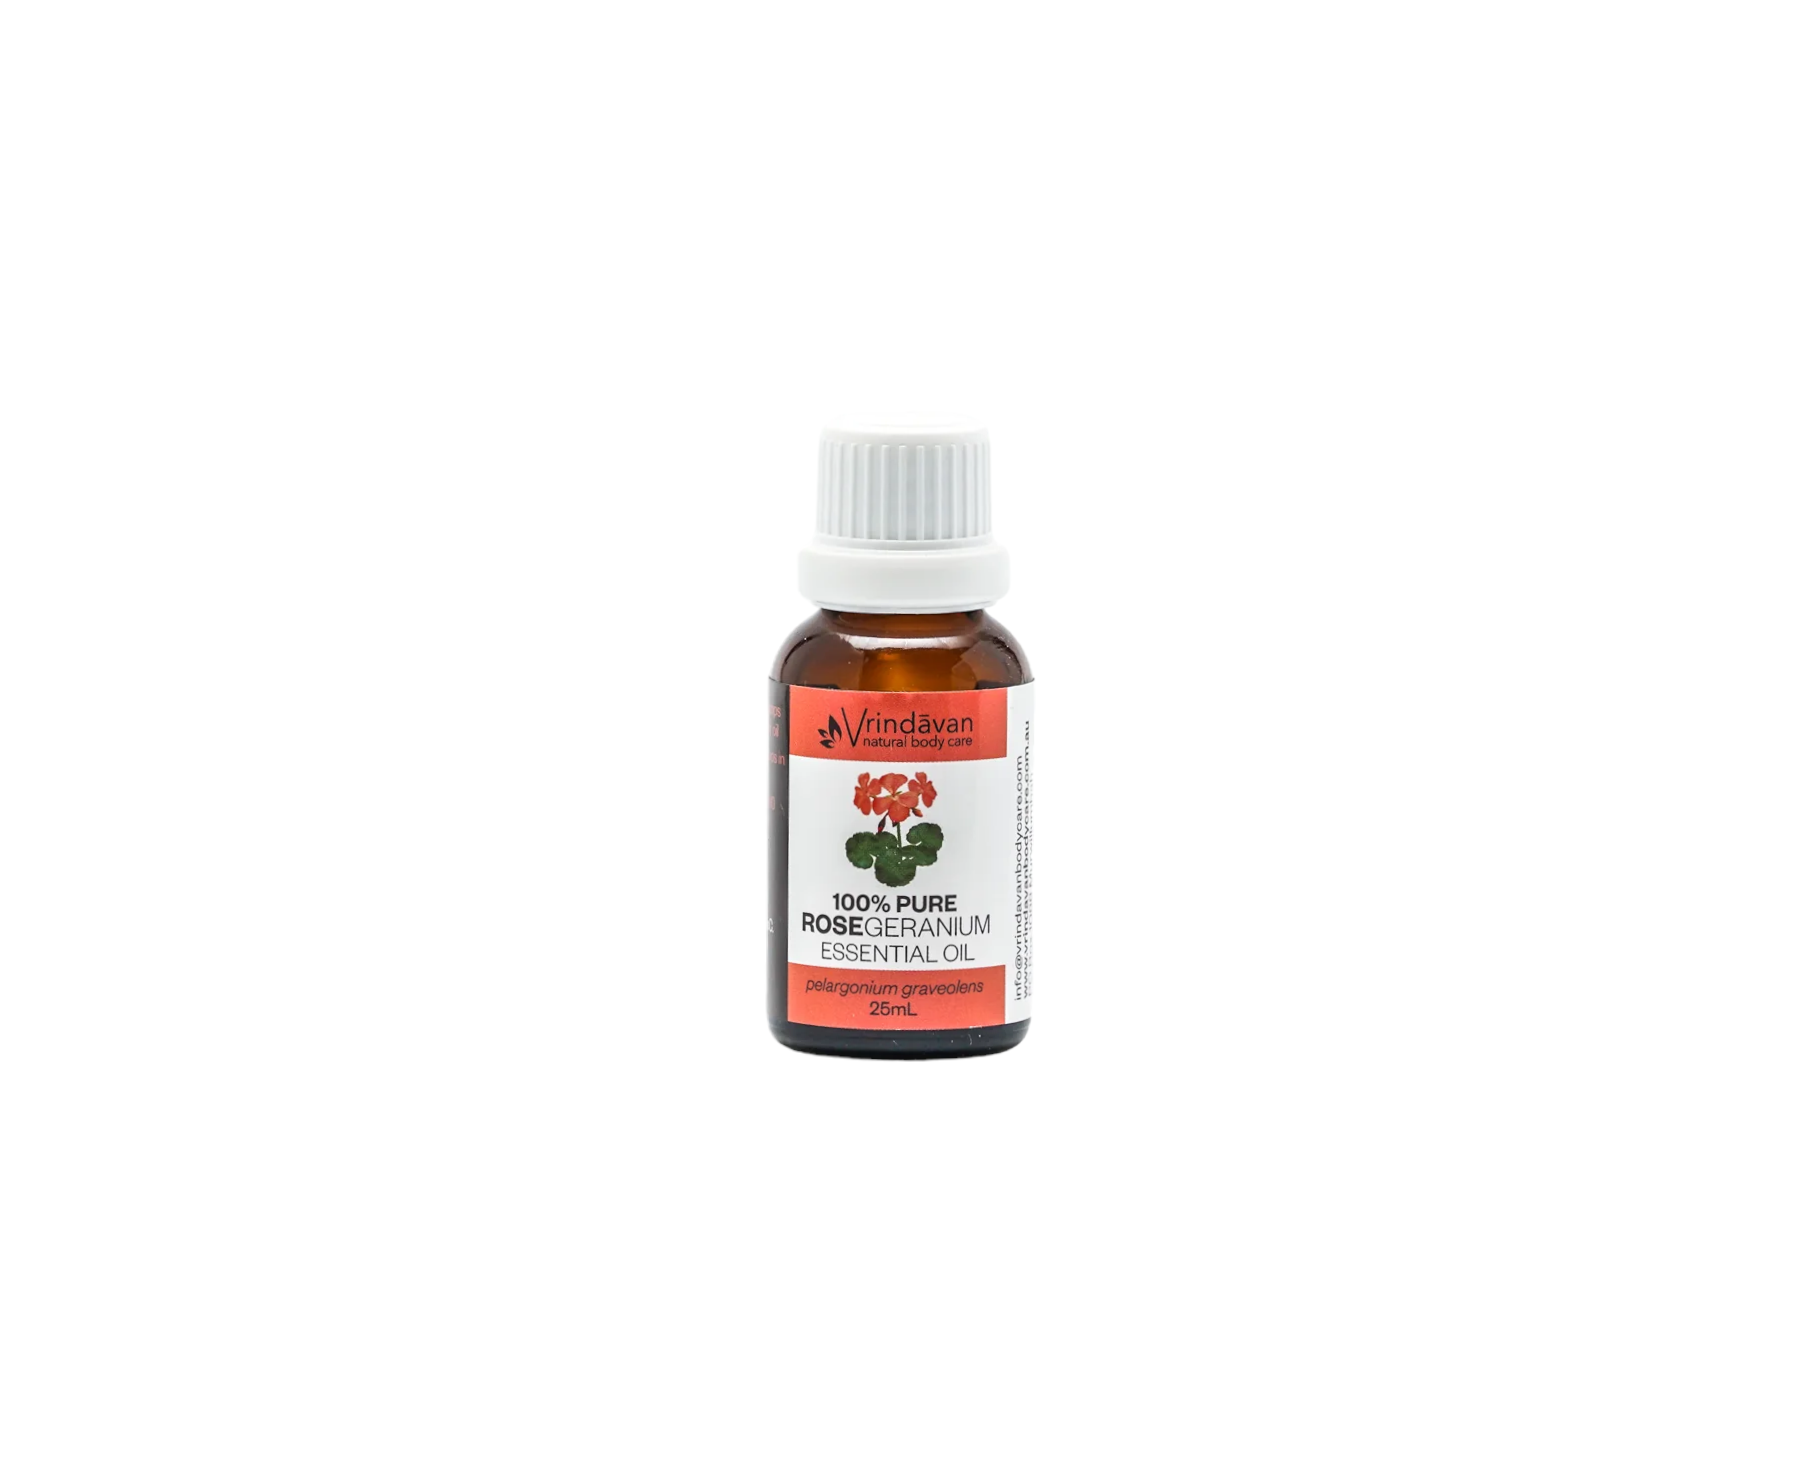 Rose Geranium 25ml Essential Oil | 100% Pure | Vrindavan